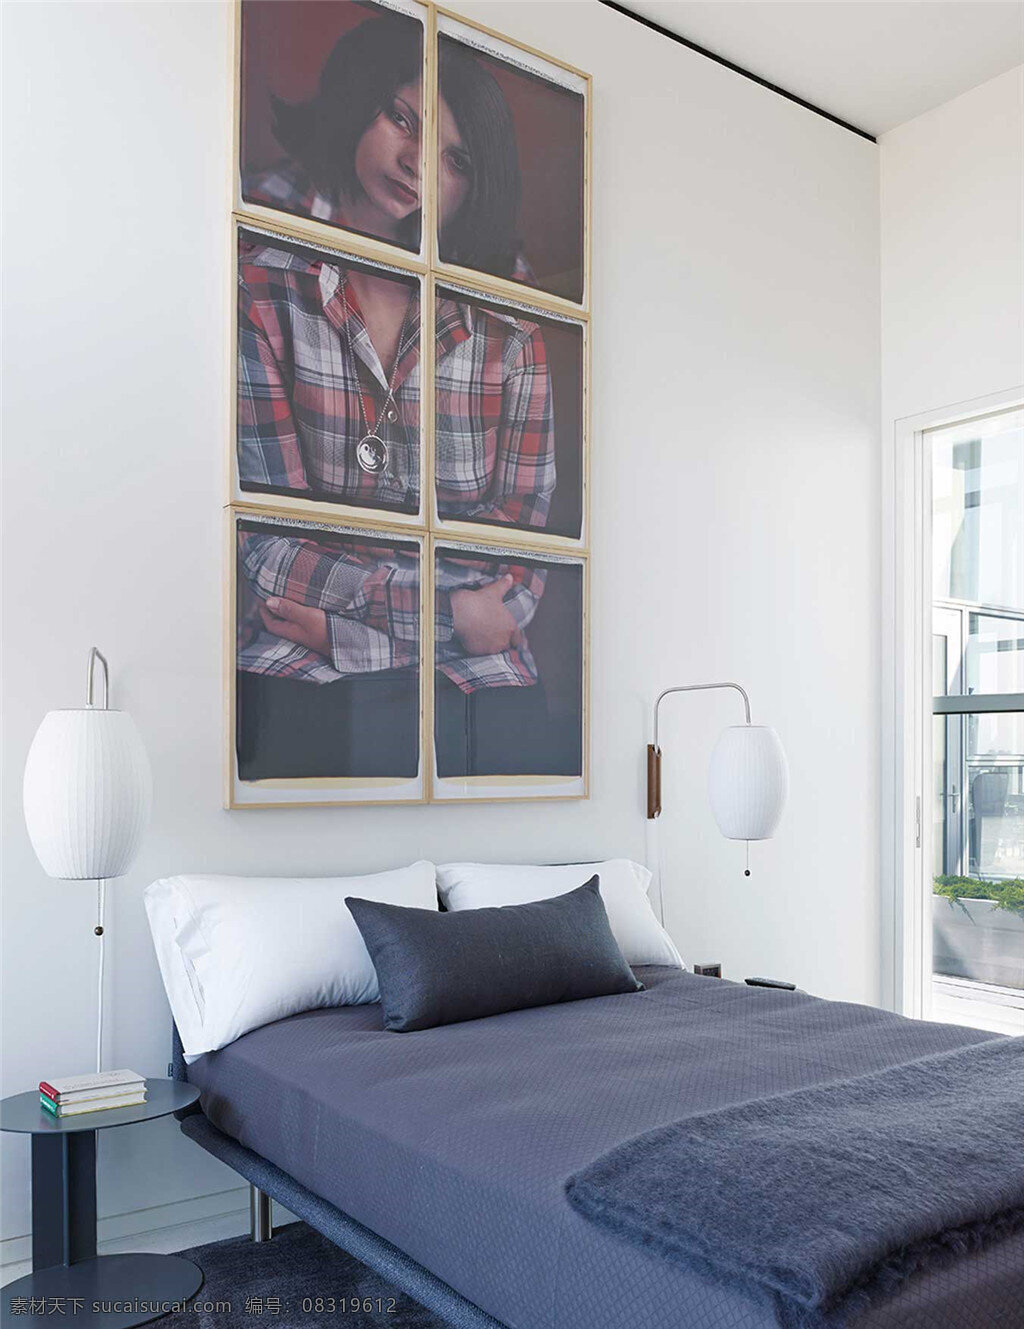 现代 简约 卧室 装修 效果图 床头人物挂画 简约风格 室内设计